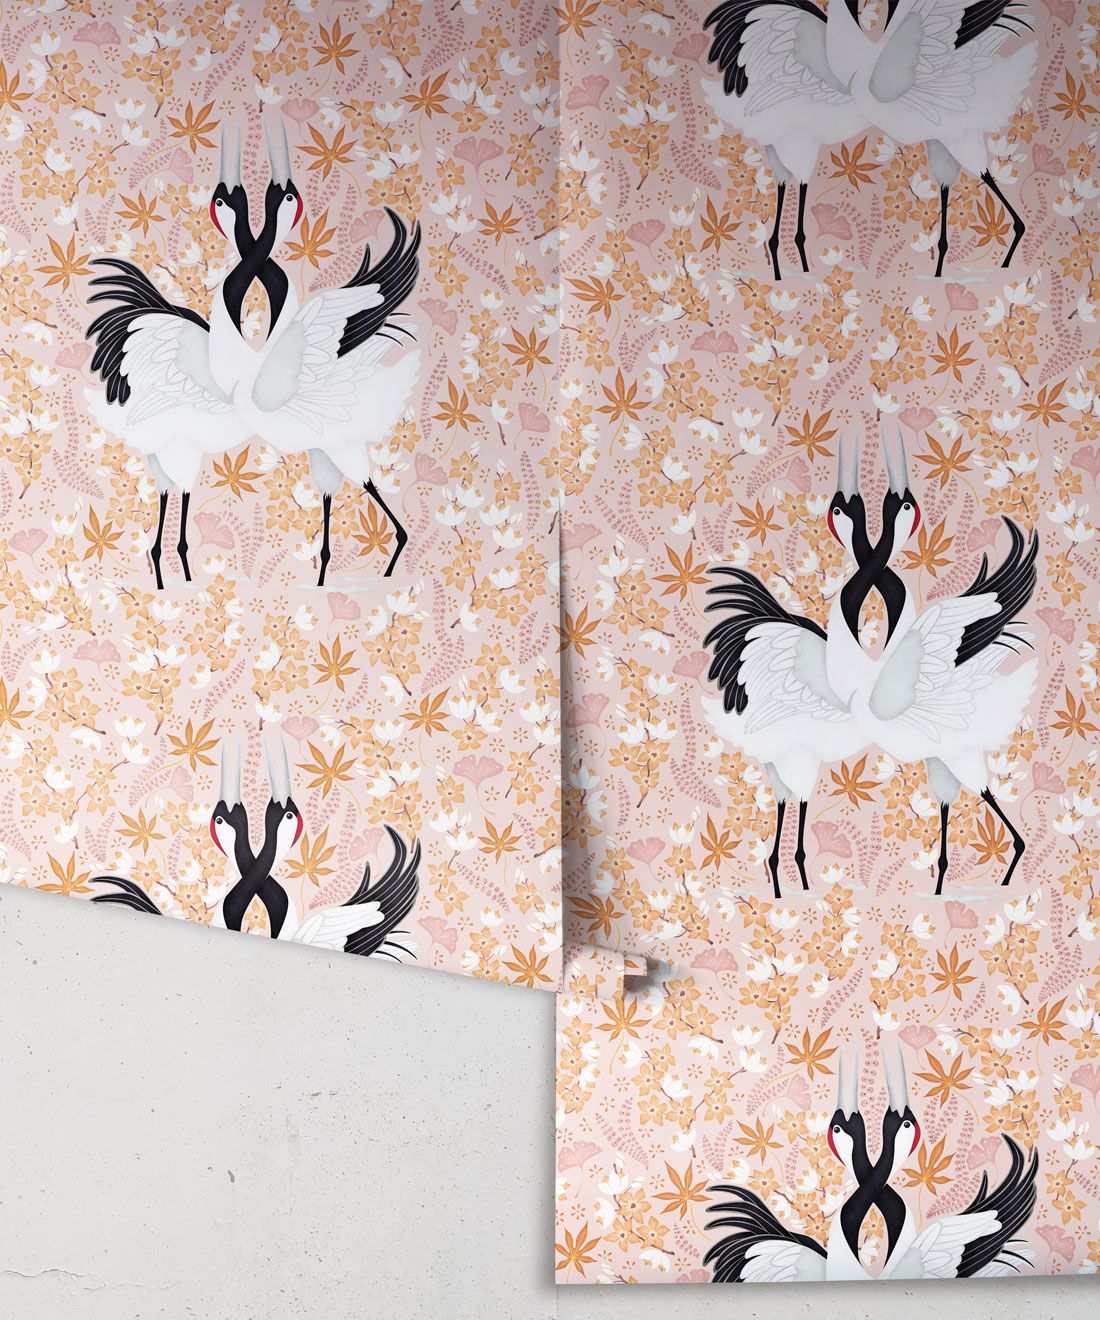 Japanese Cranes Wallpaper • Bird Wallpaper • Pink Wallpaper Drops